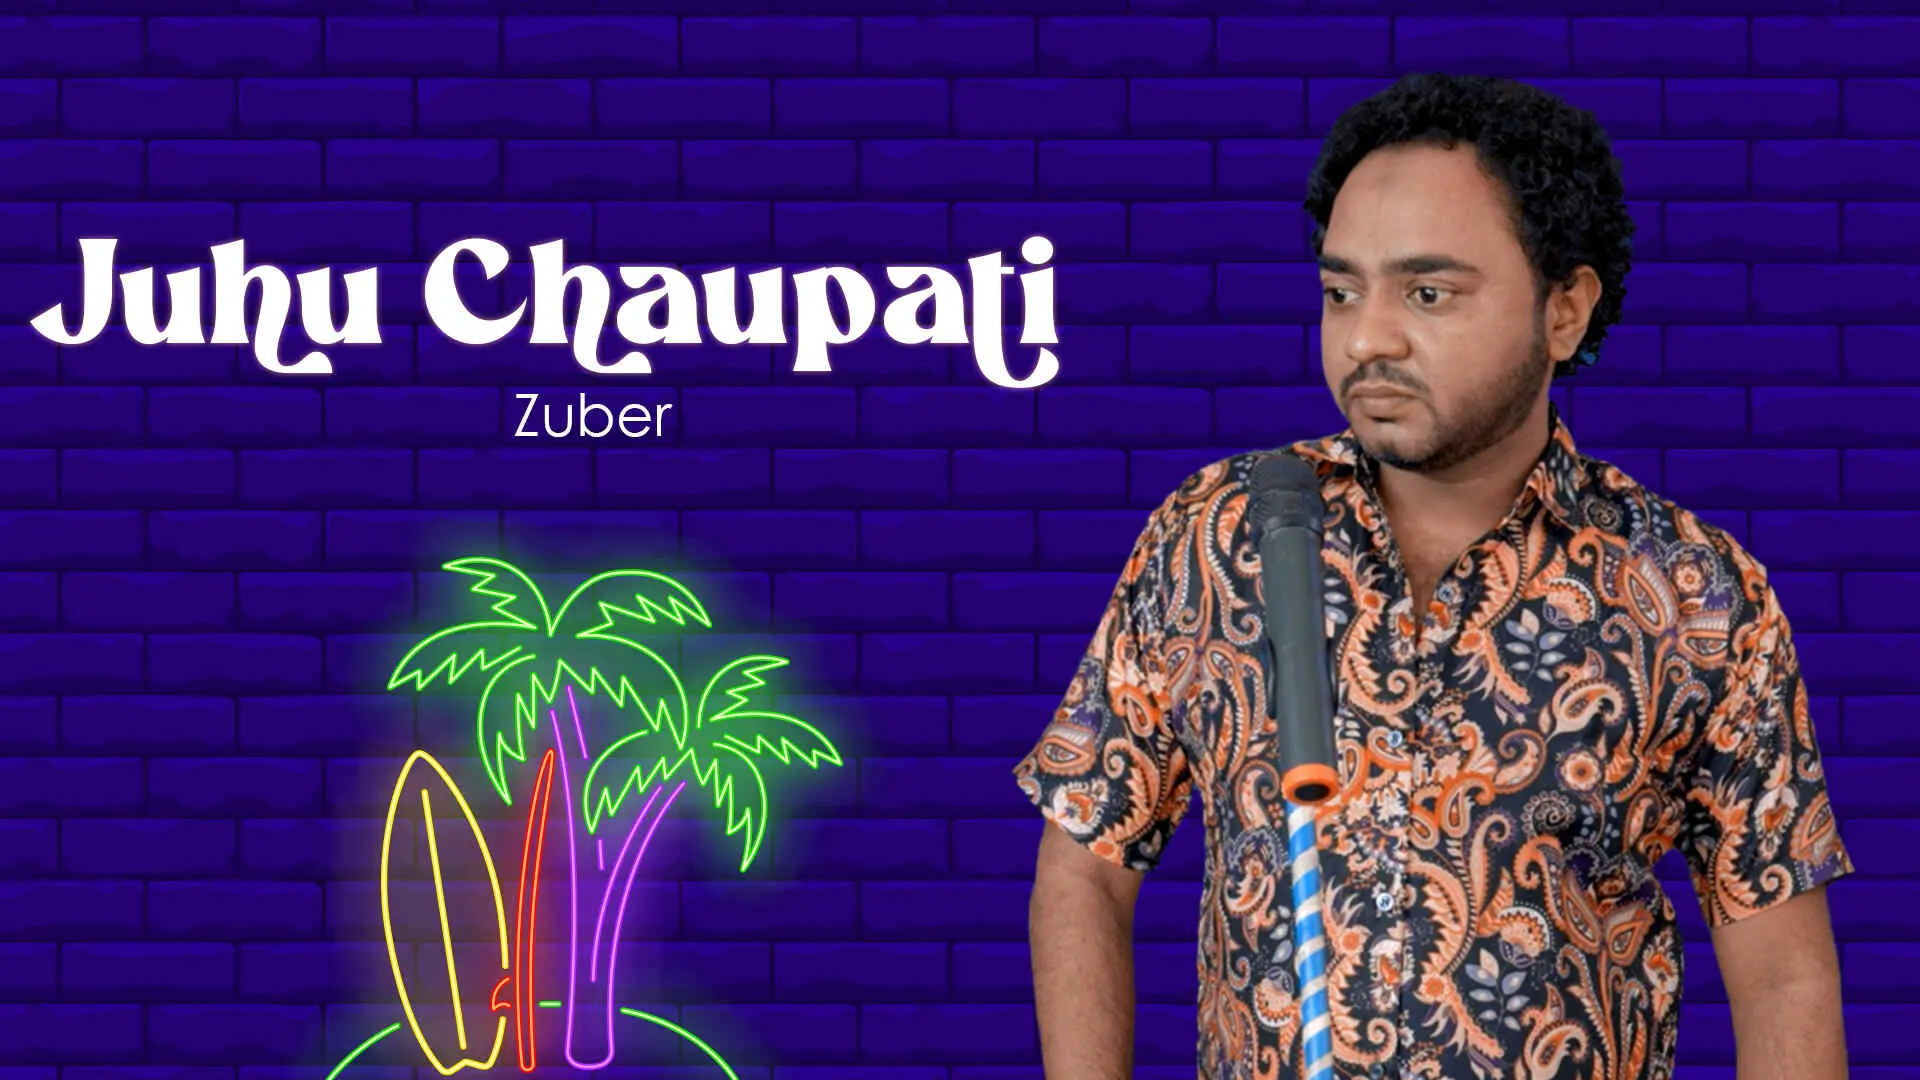 Juhu Chaupati